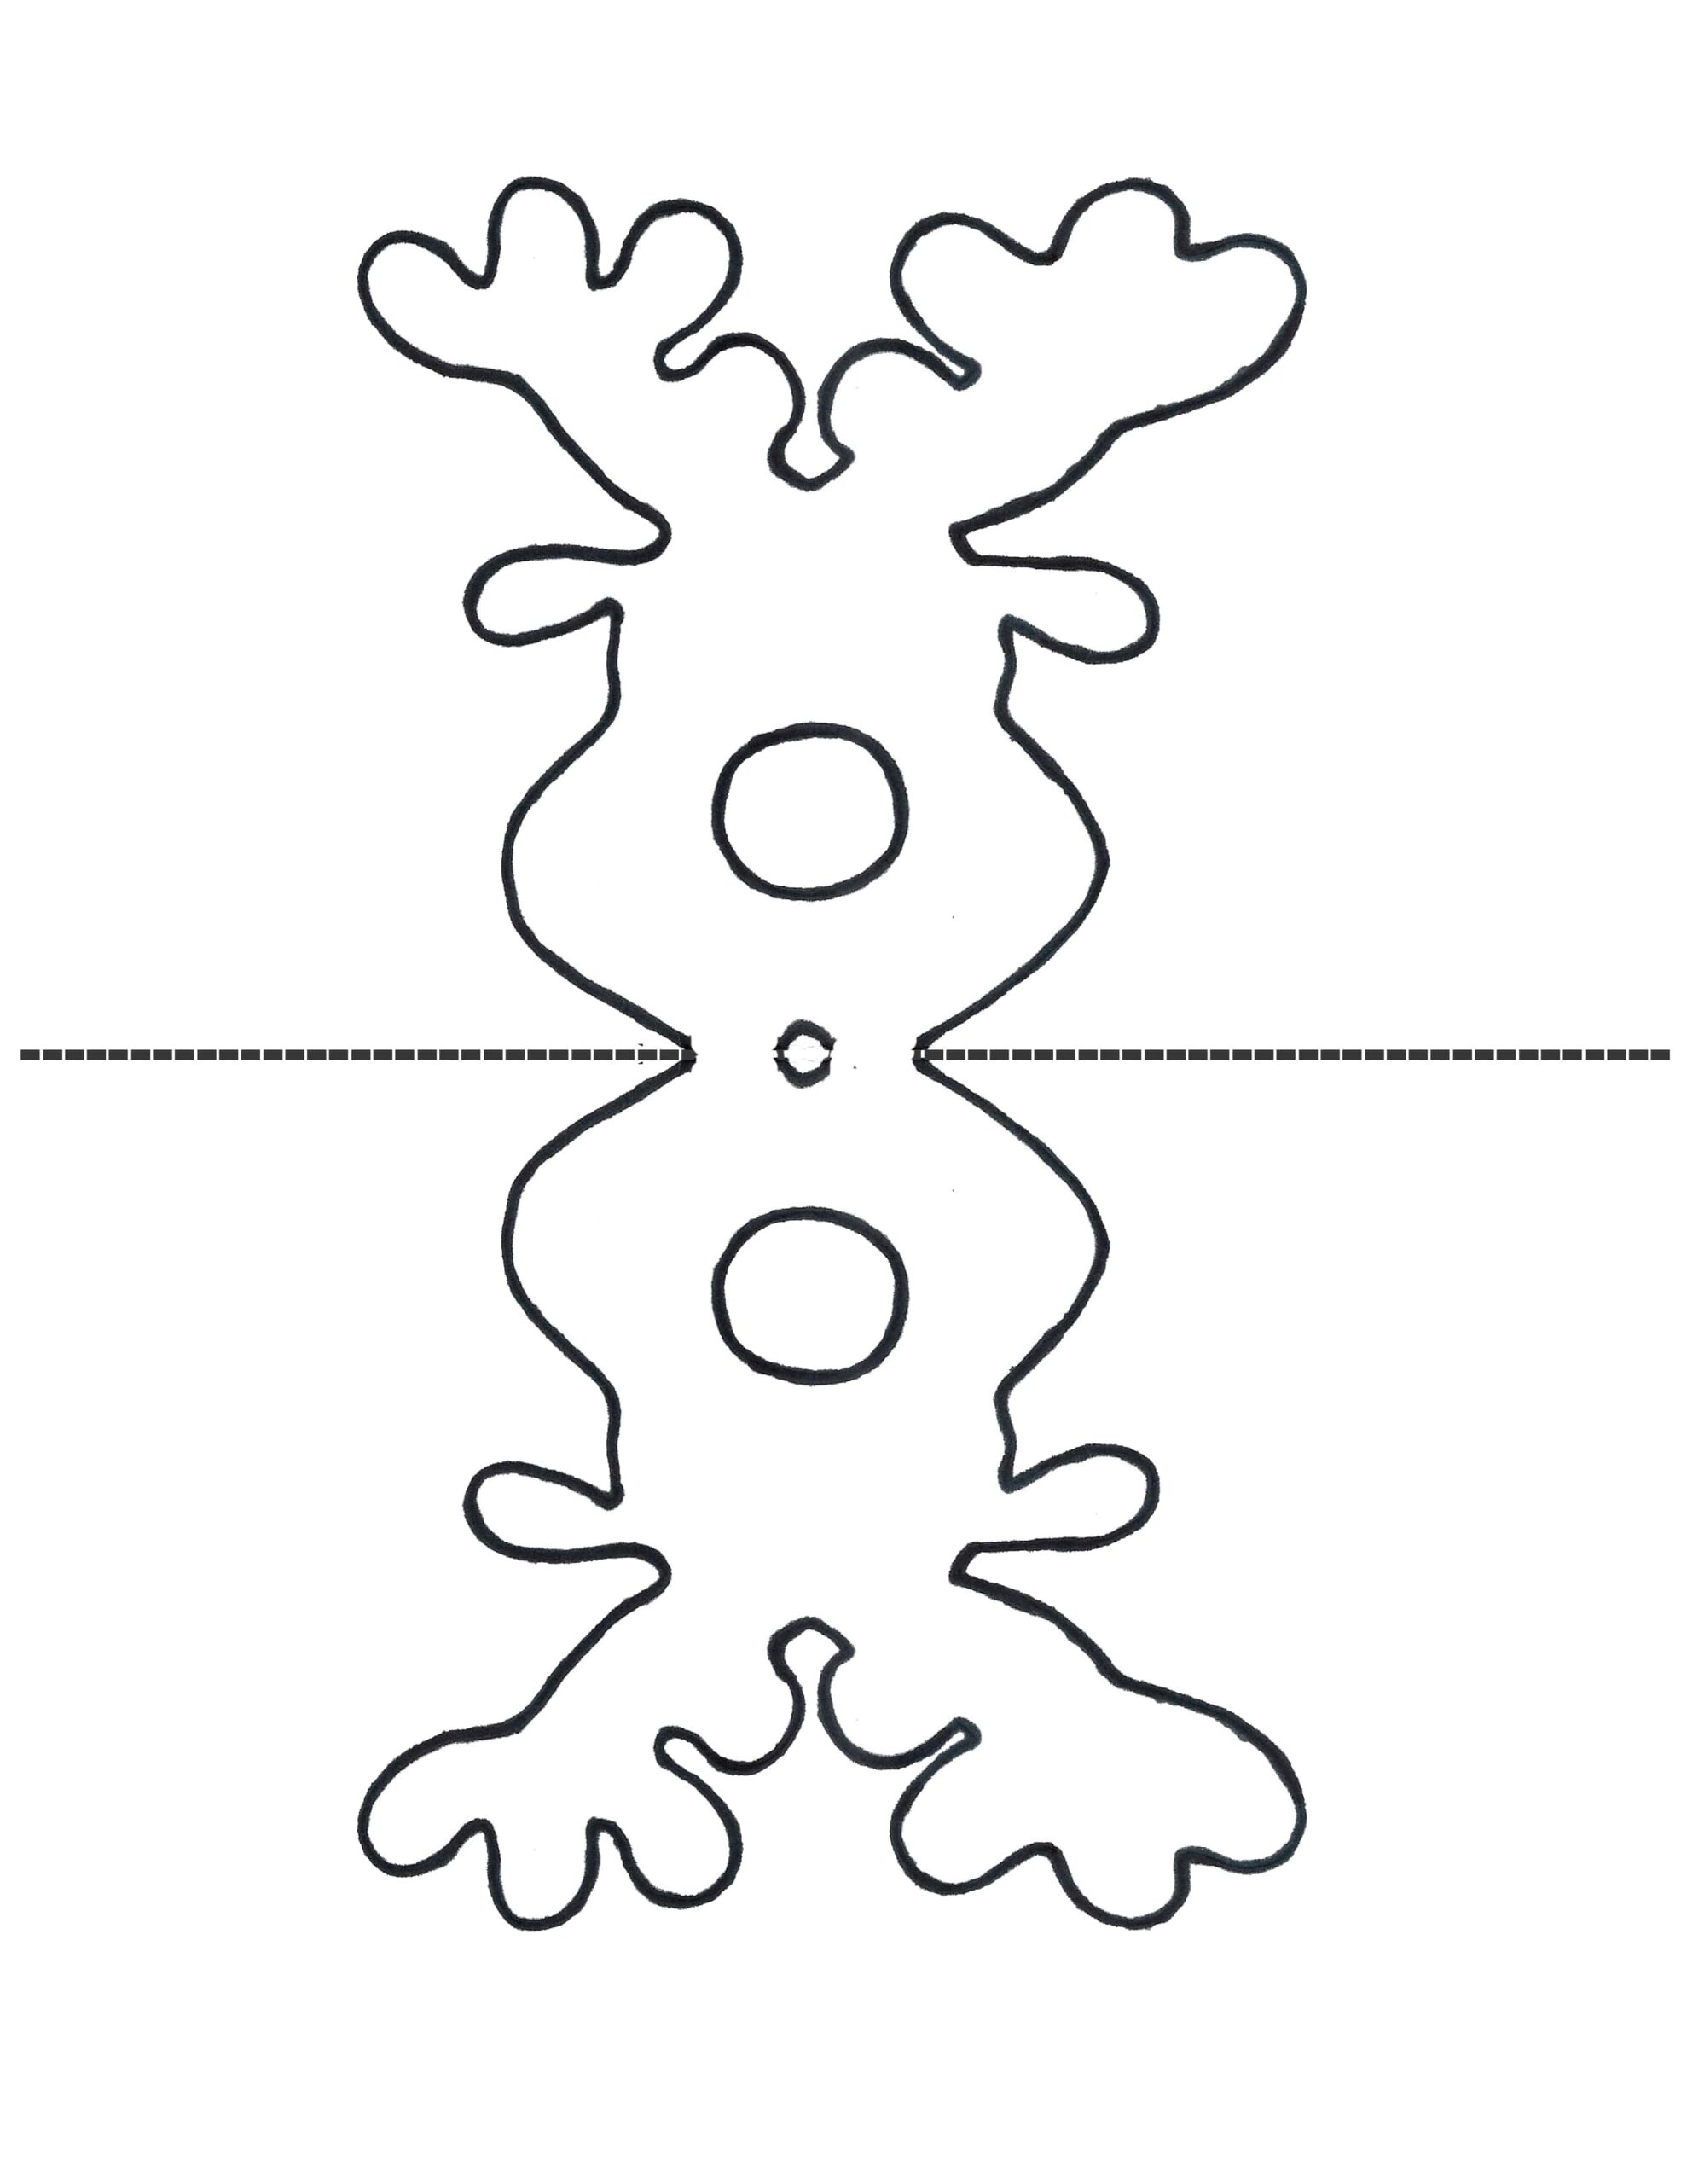 Printable Reindeer Patterns_52331